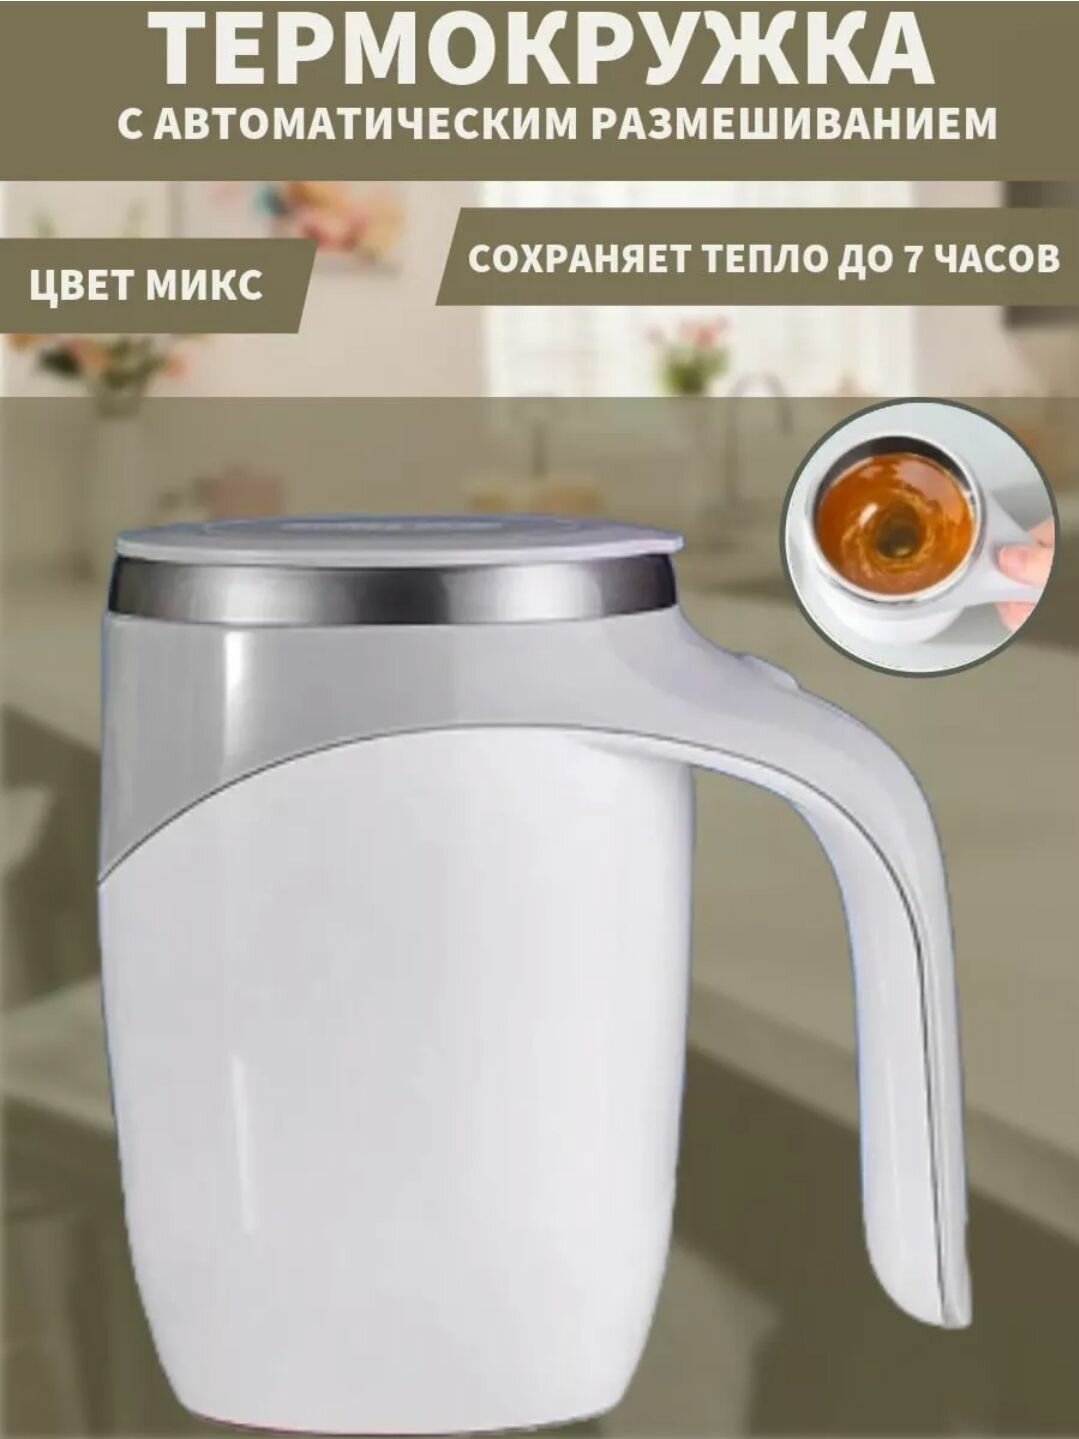 Термокружка для кофе / Кружка мешалка